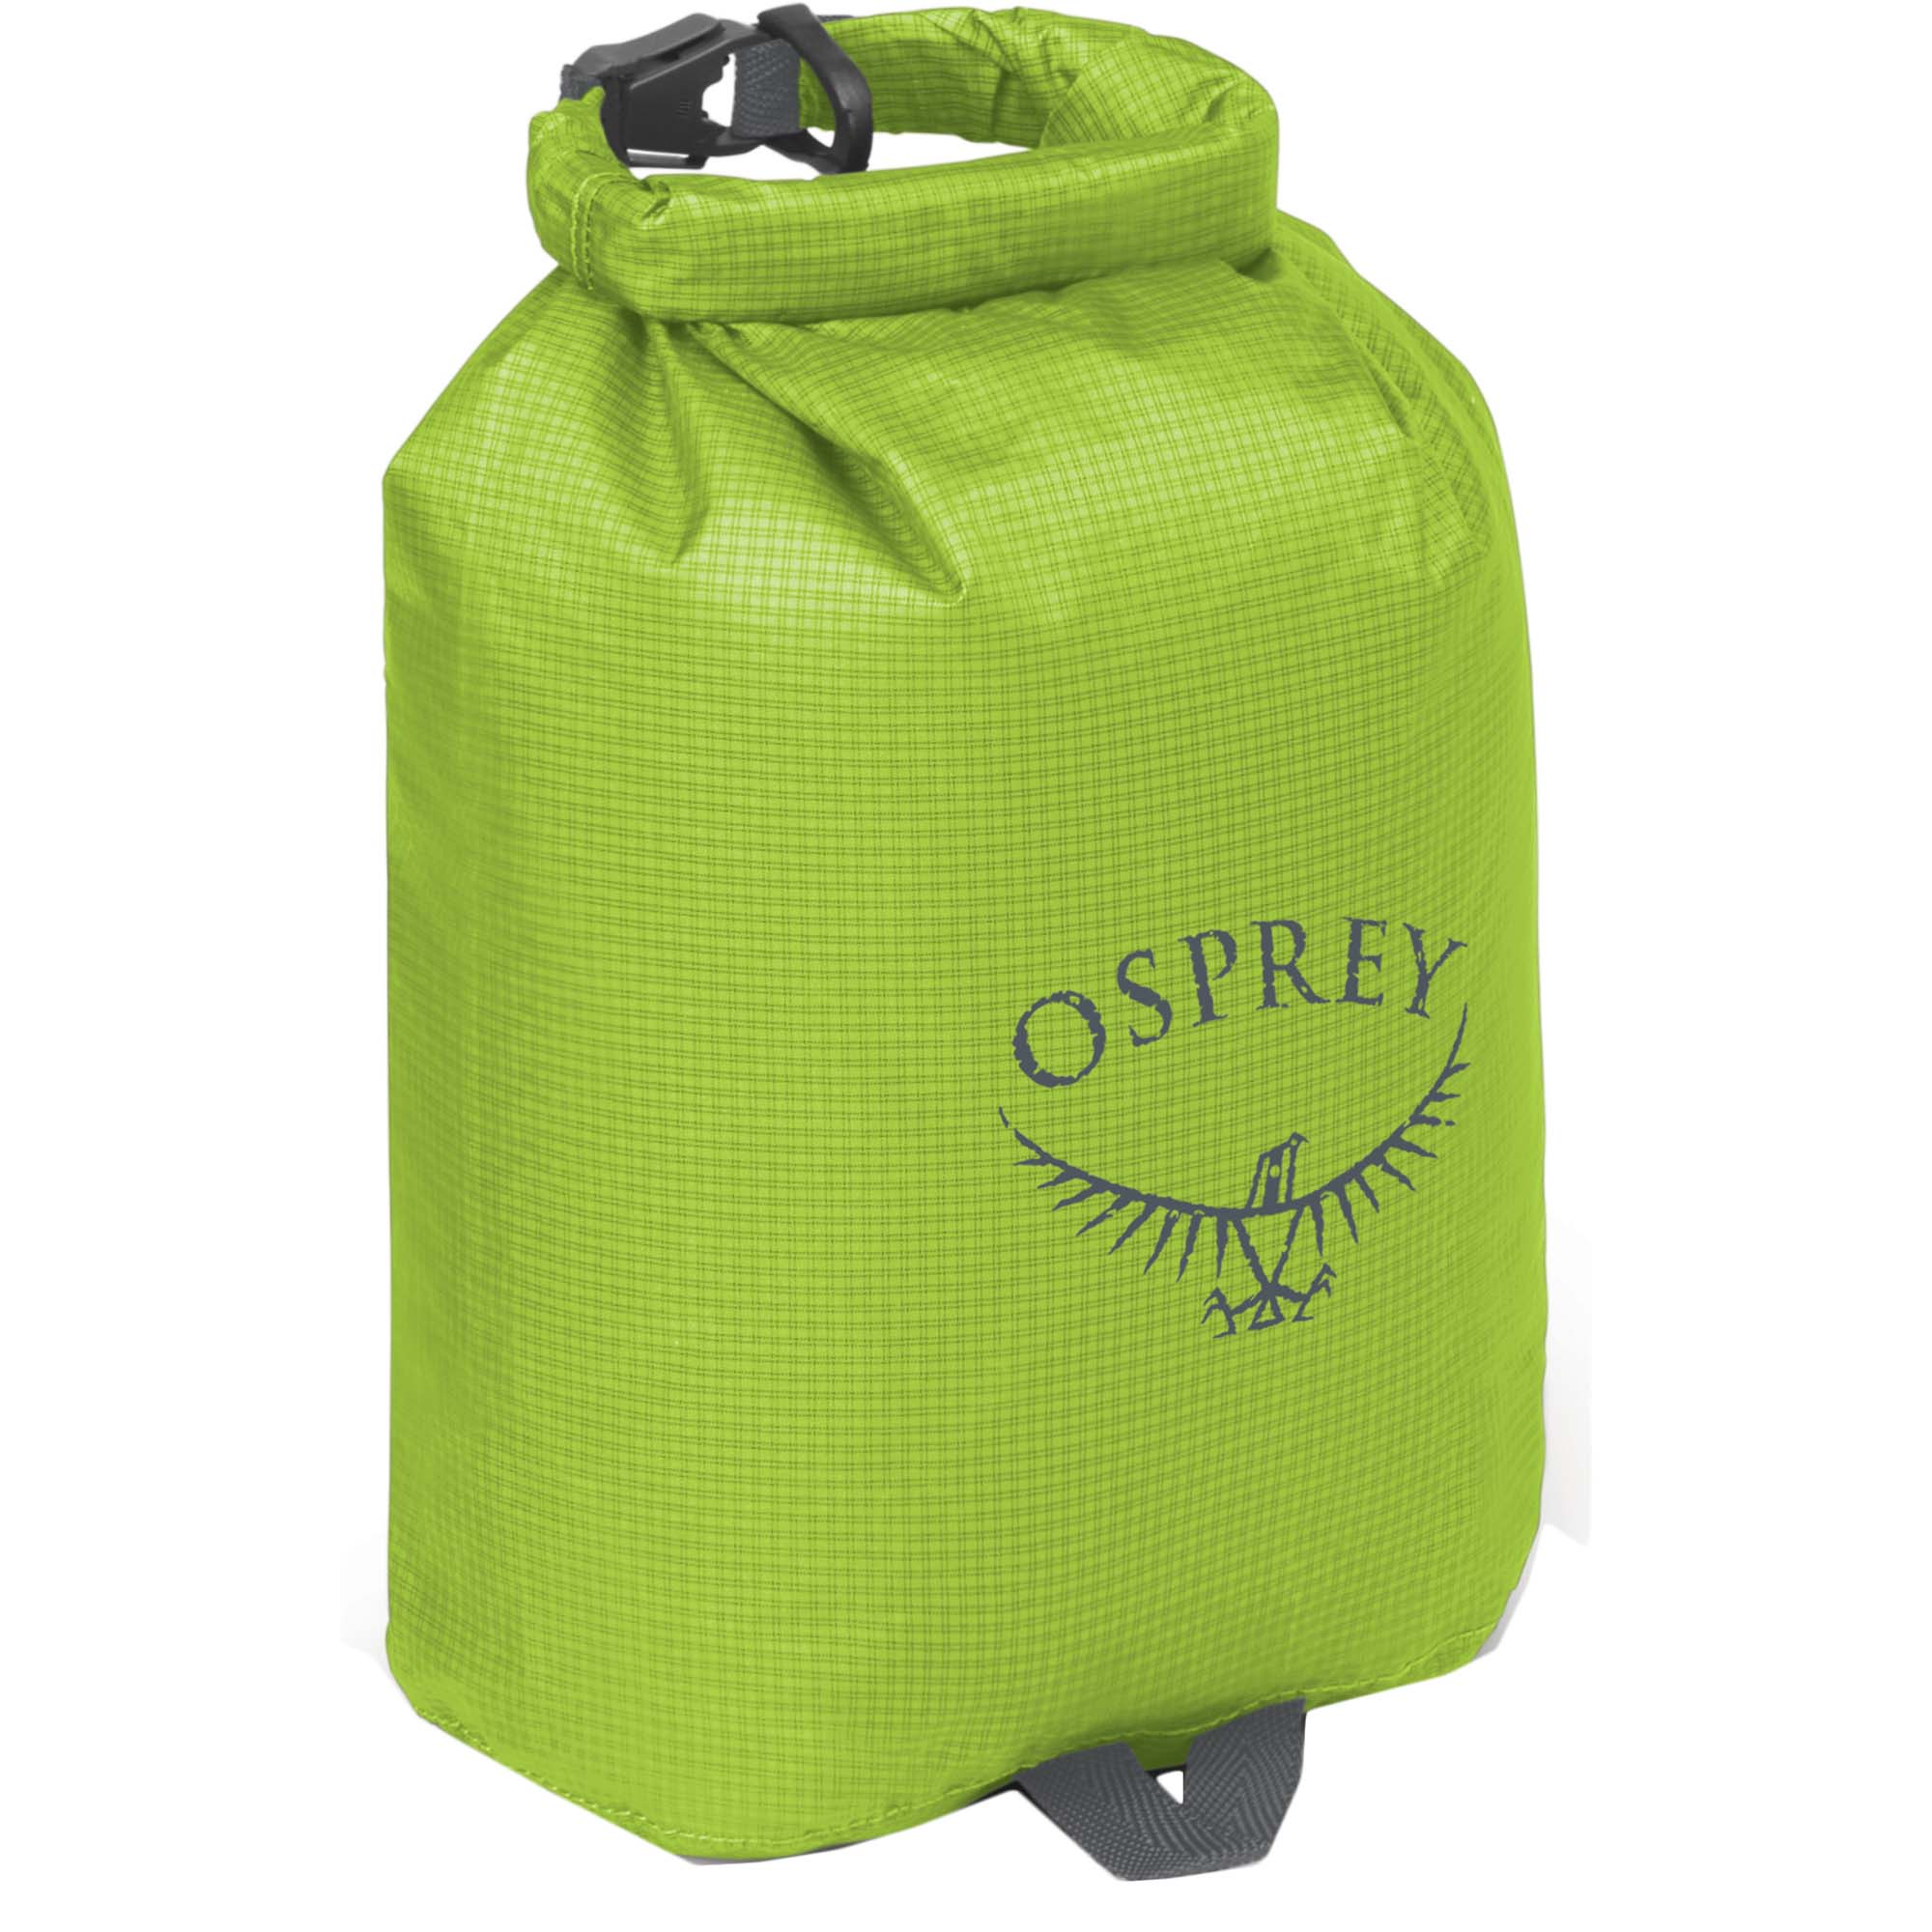 Osprey Ultralight Drysack 3 Waterproof Gear Bag